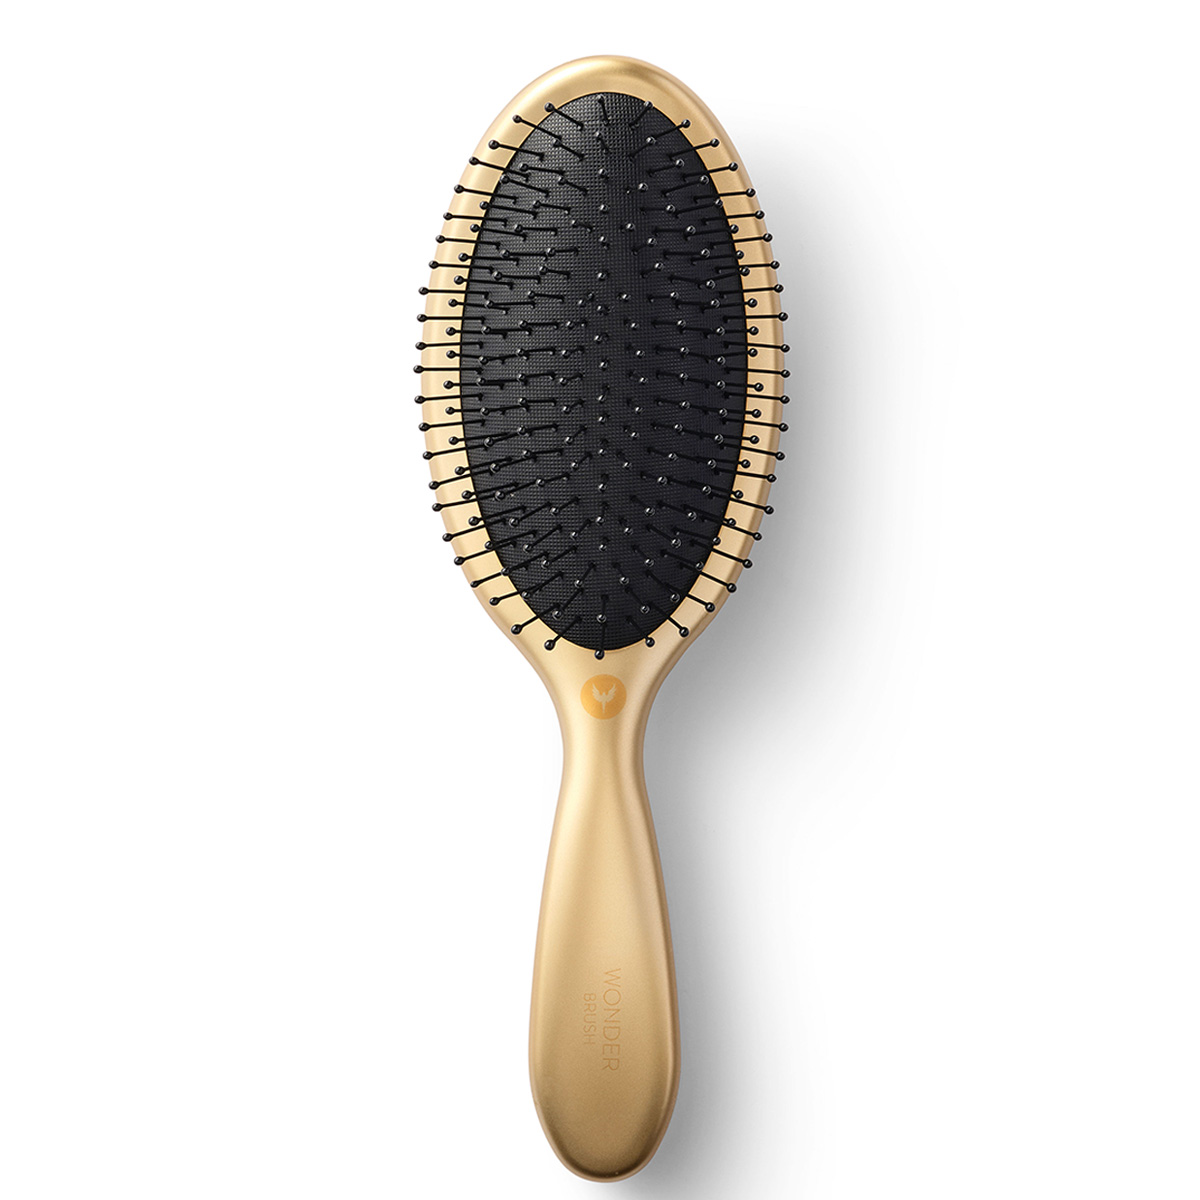 HH Simonsen Wonder Brush - Golden Delight - Hairsale.se